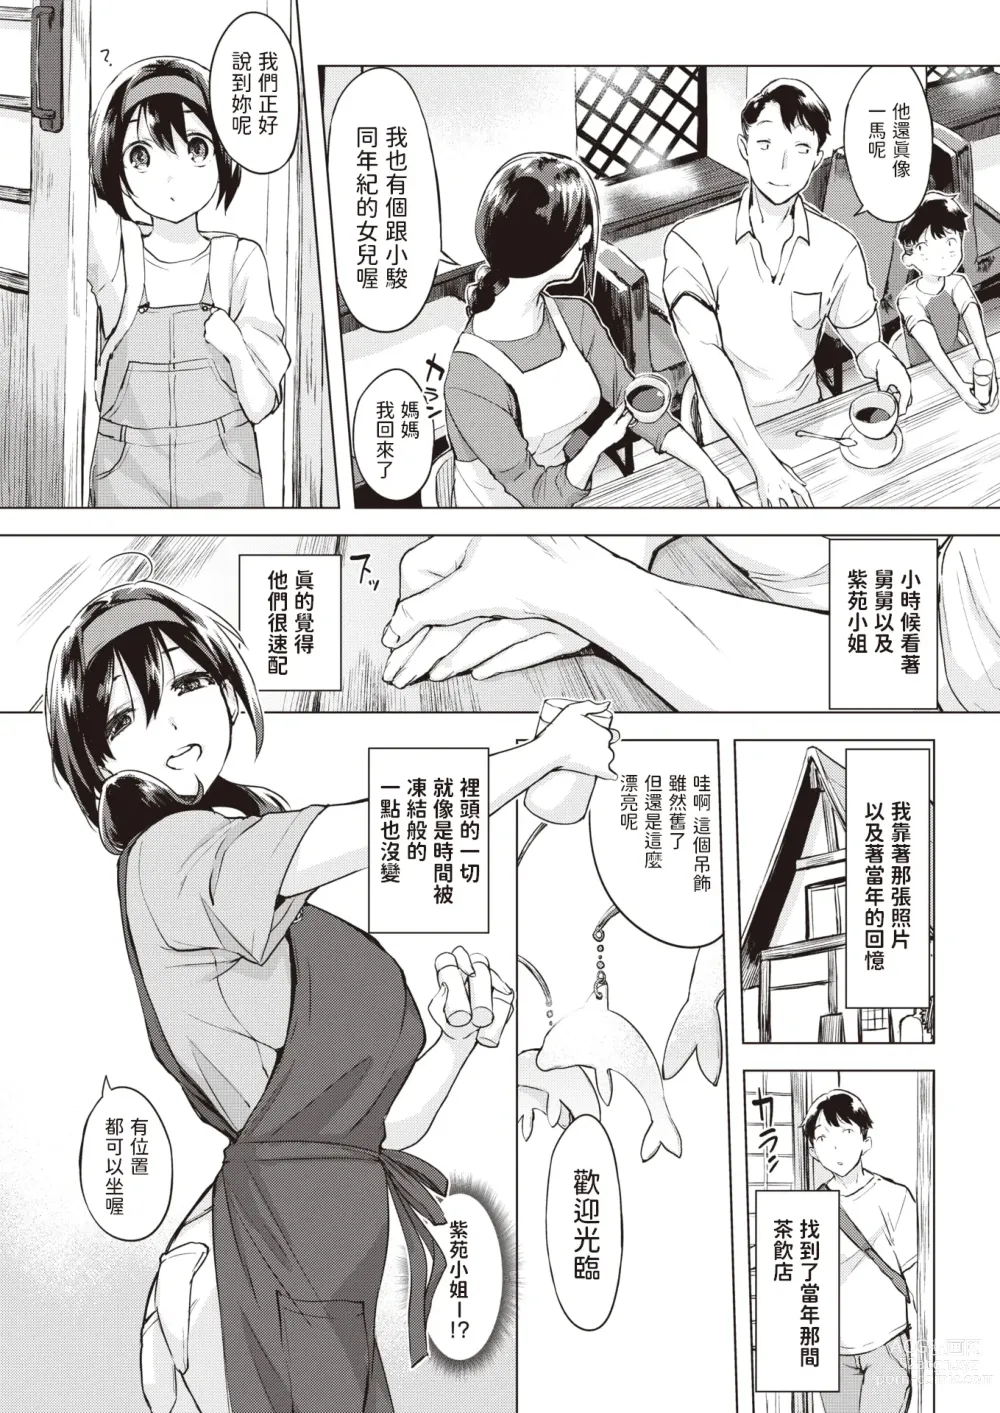 Page 3 of manga Iruka no Mobile